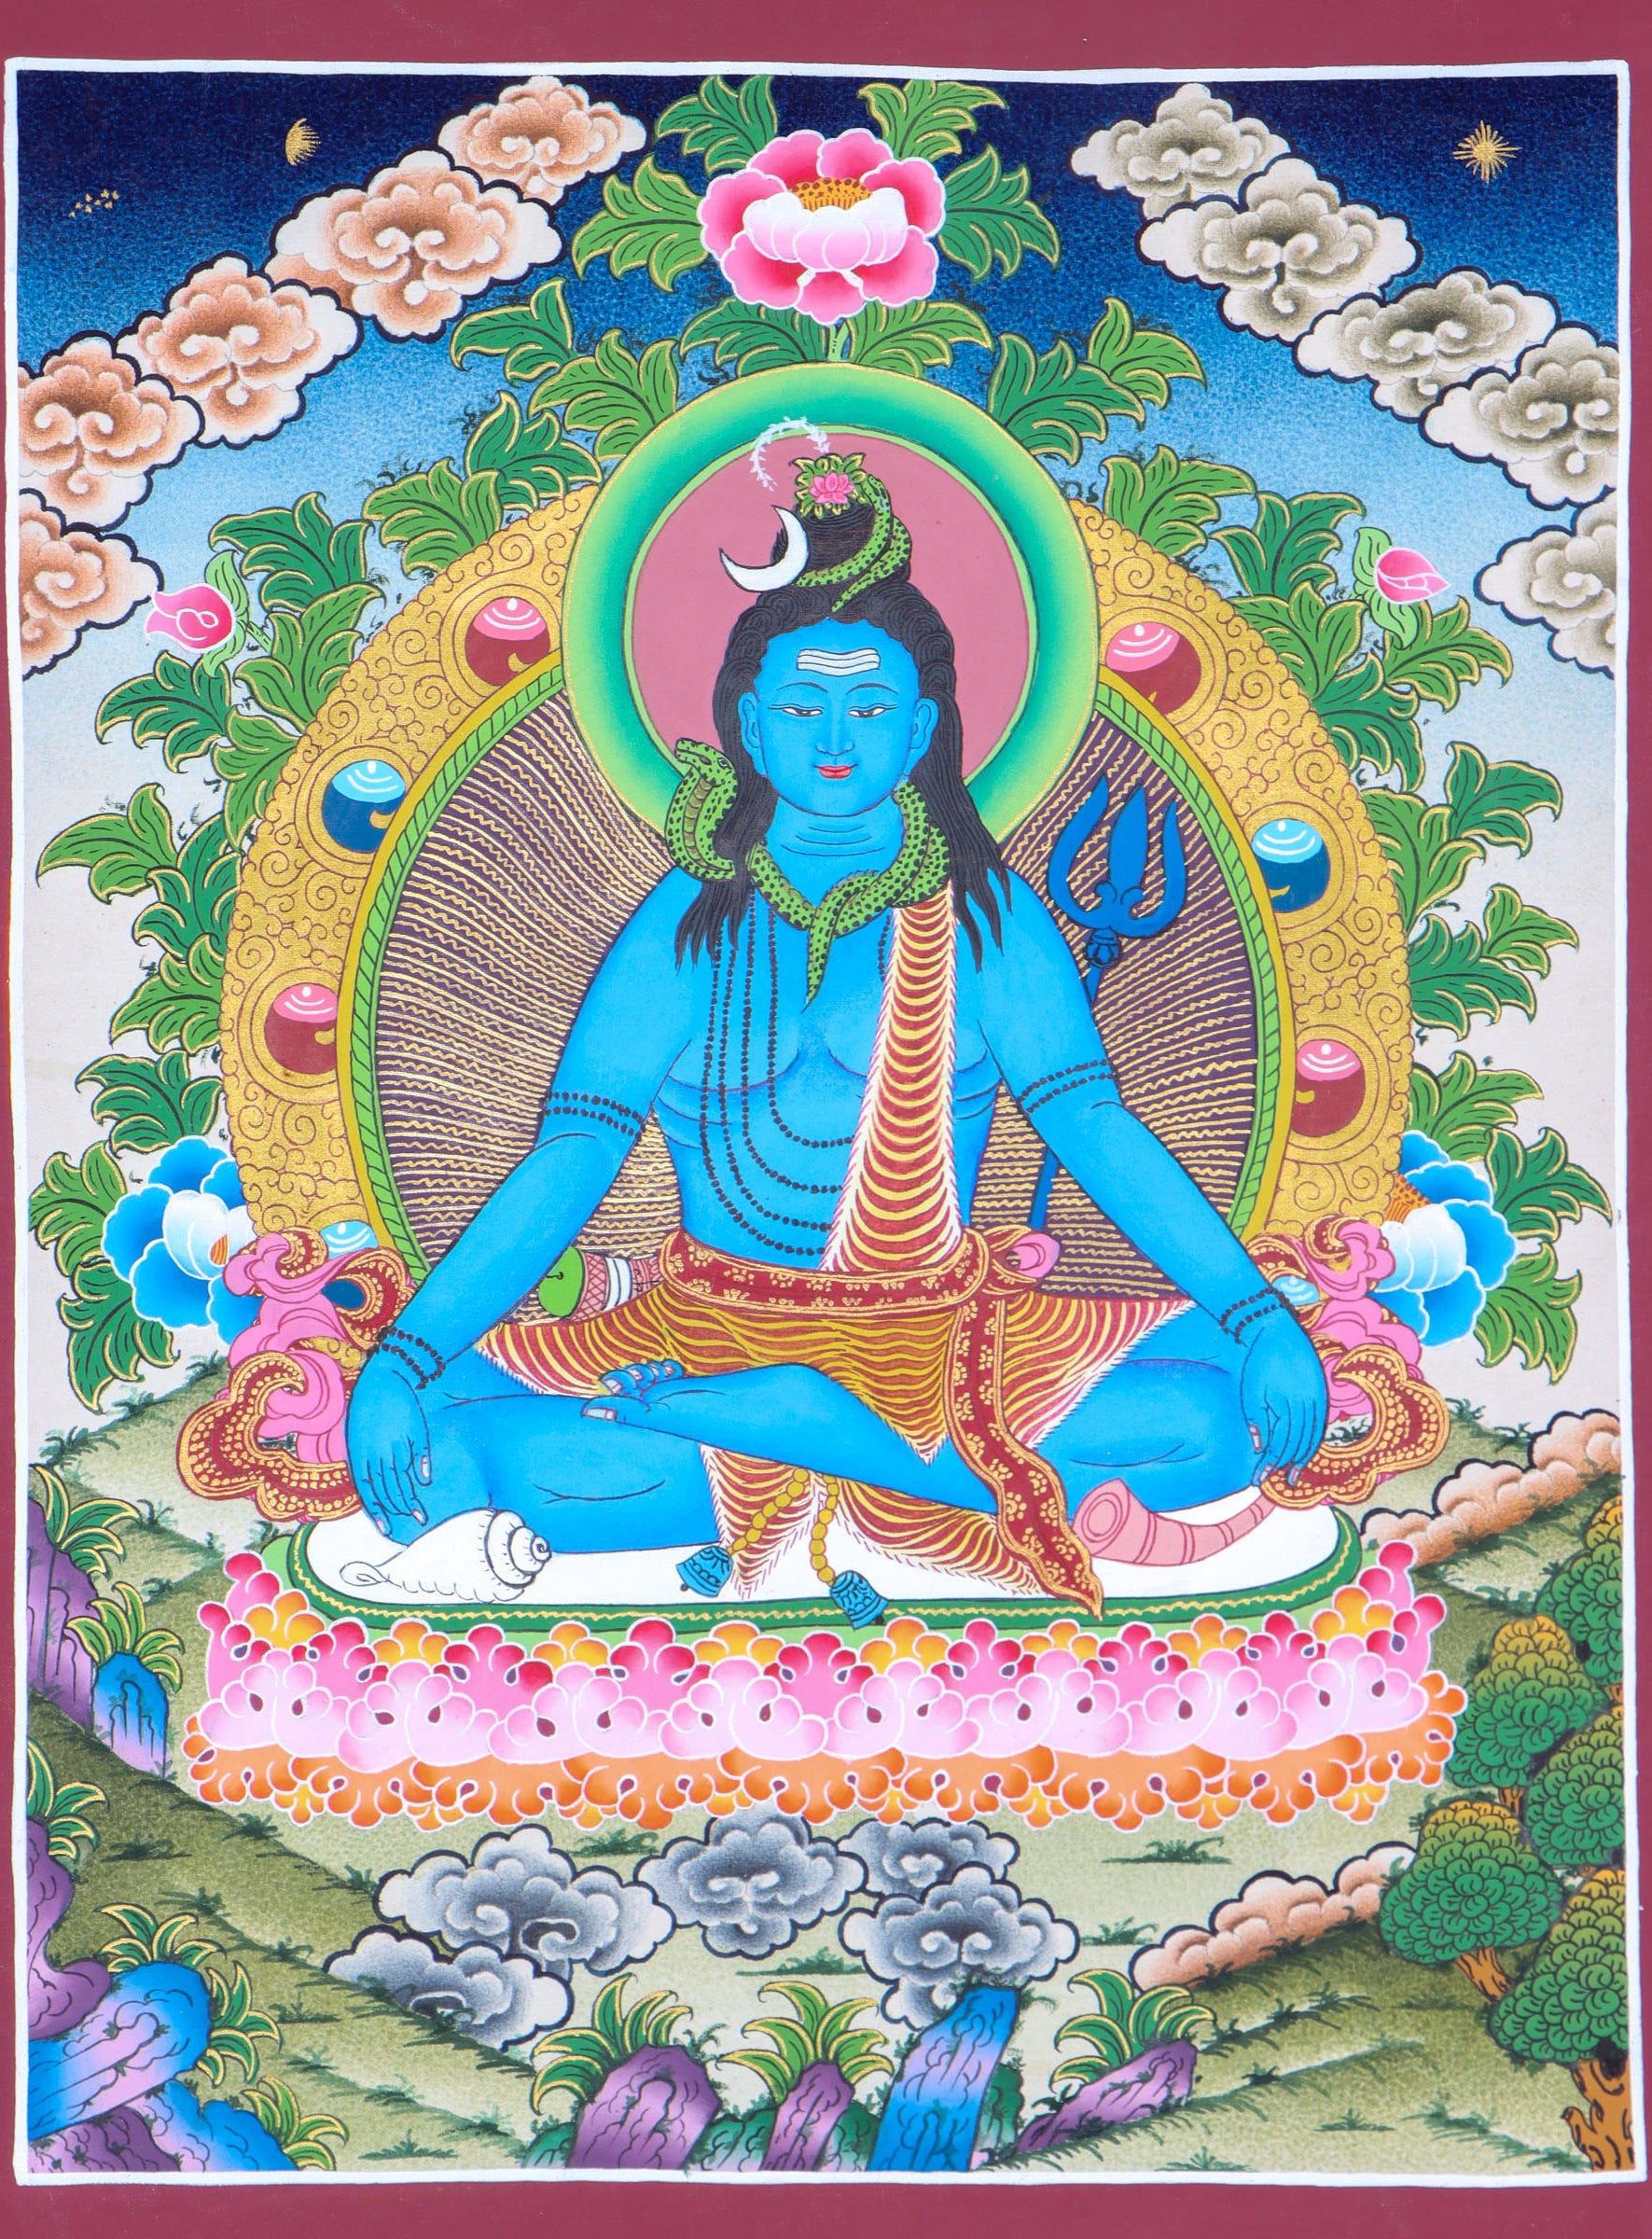 Shiva Thangka for prayer and devotion.